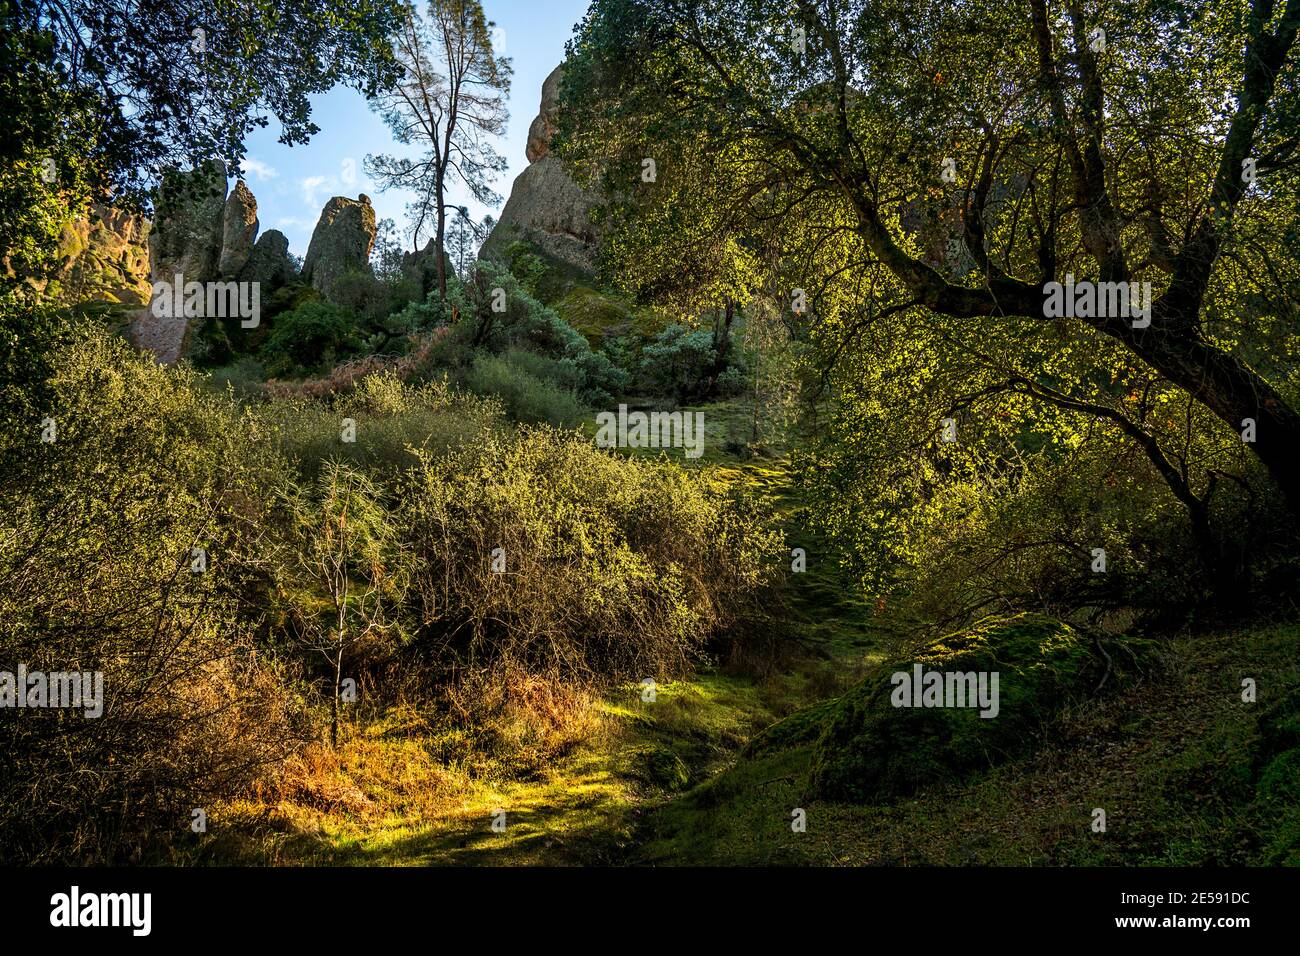 Ein friedliches, grünes glenn im Herzen des Pinnacles National Park, östlich des Salinas Valley, Kalifornien. Stockfoto